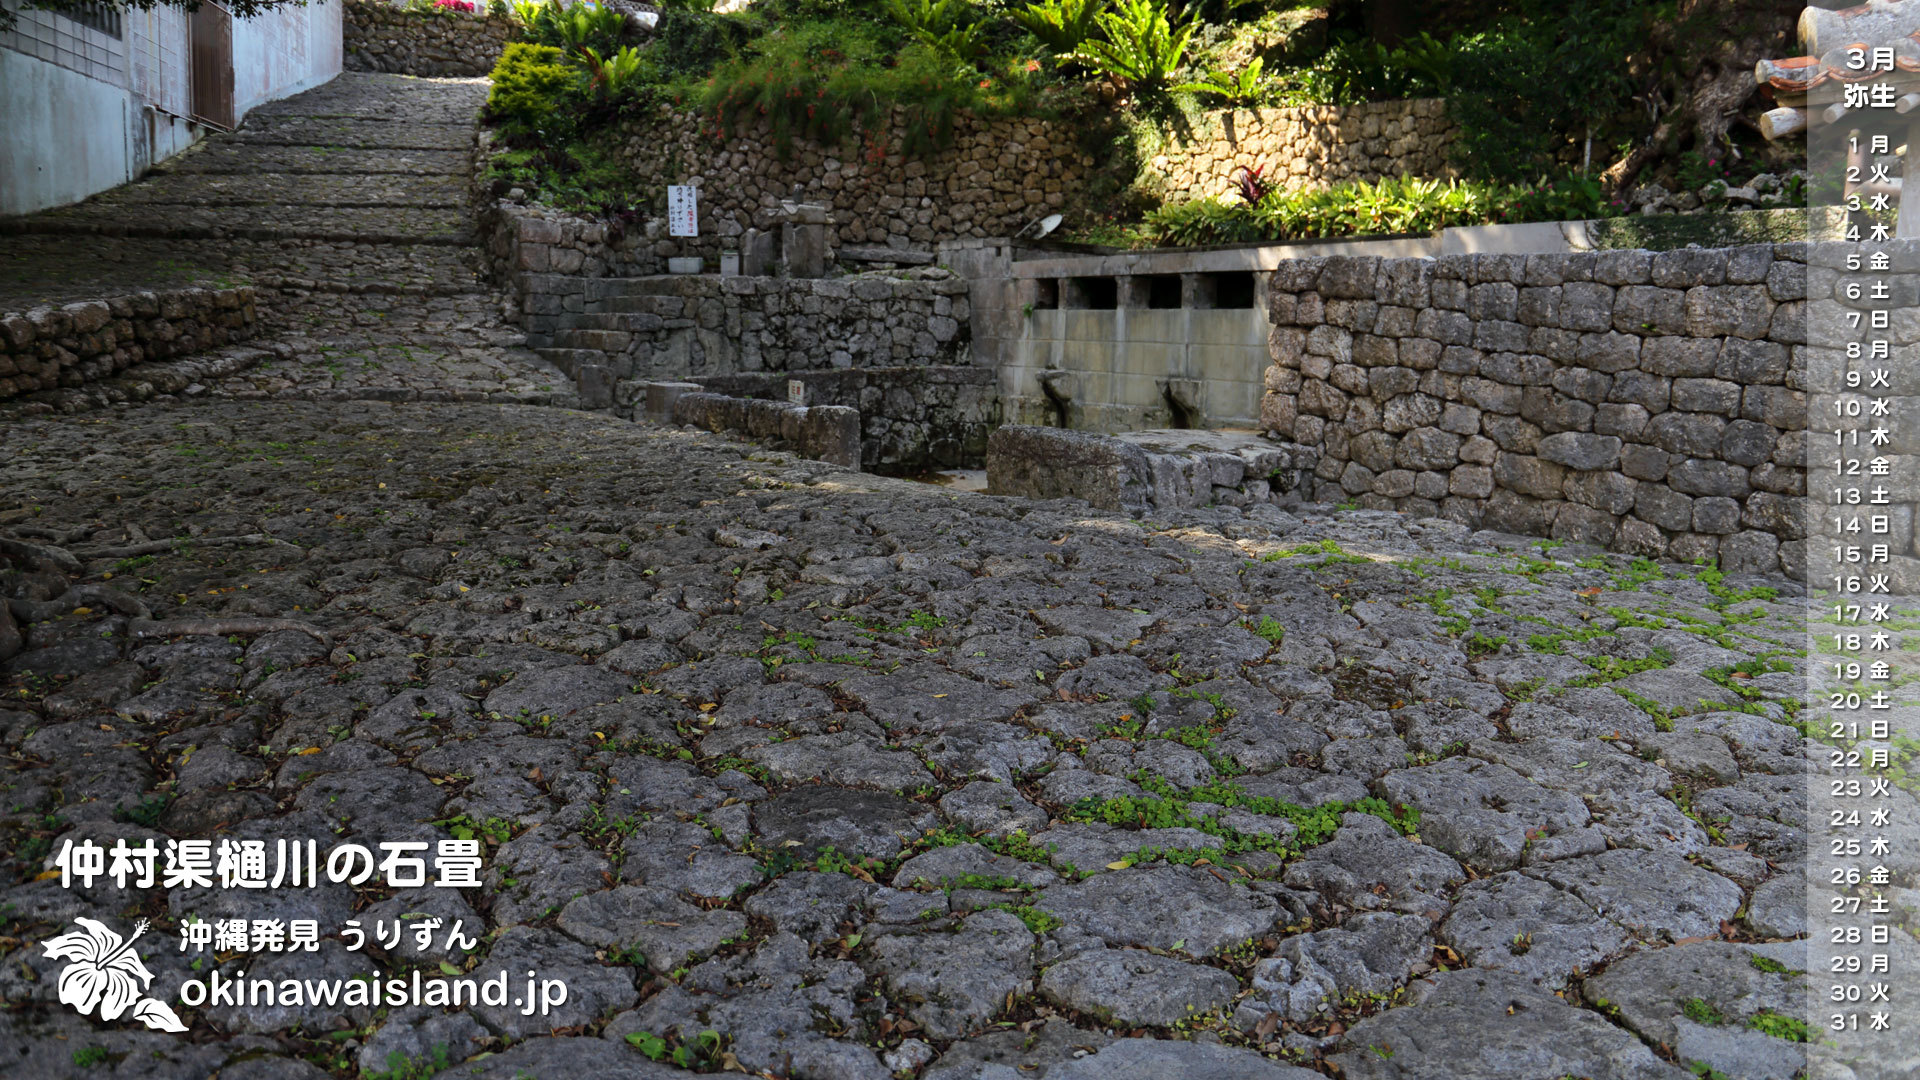 沖縄の風景 壁紙 デスクトップカレンダー 無料ダウンロード 仲村渠樋川の石畳 デスクトップカレンダー３月